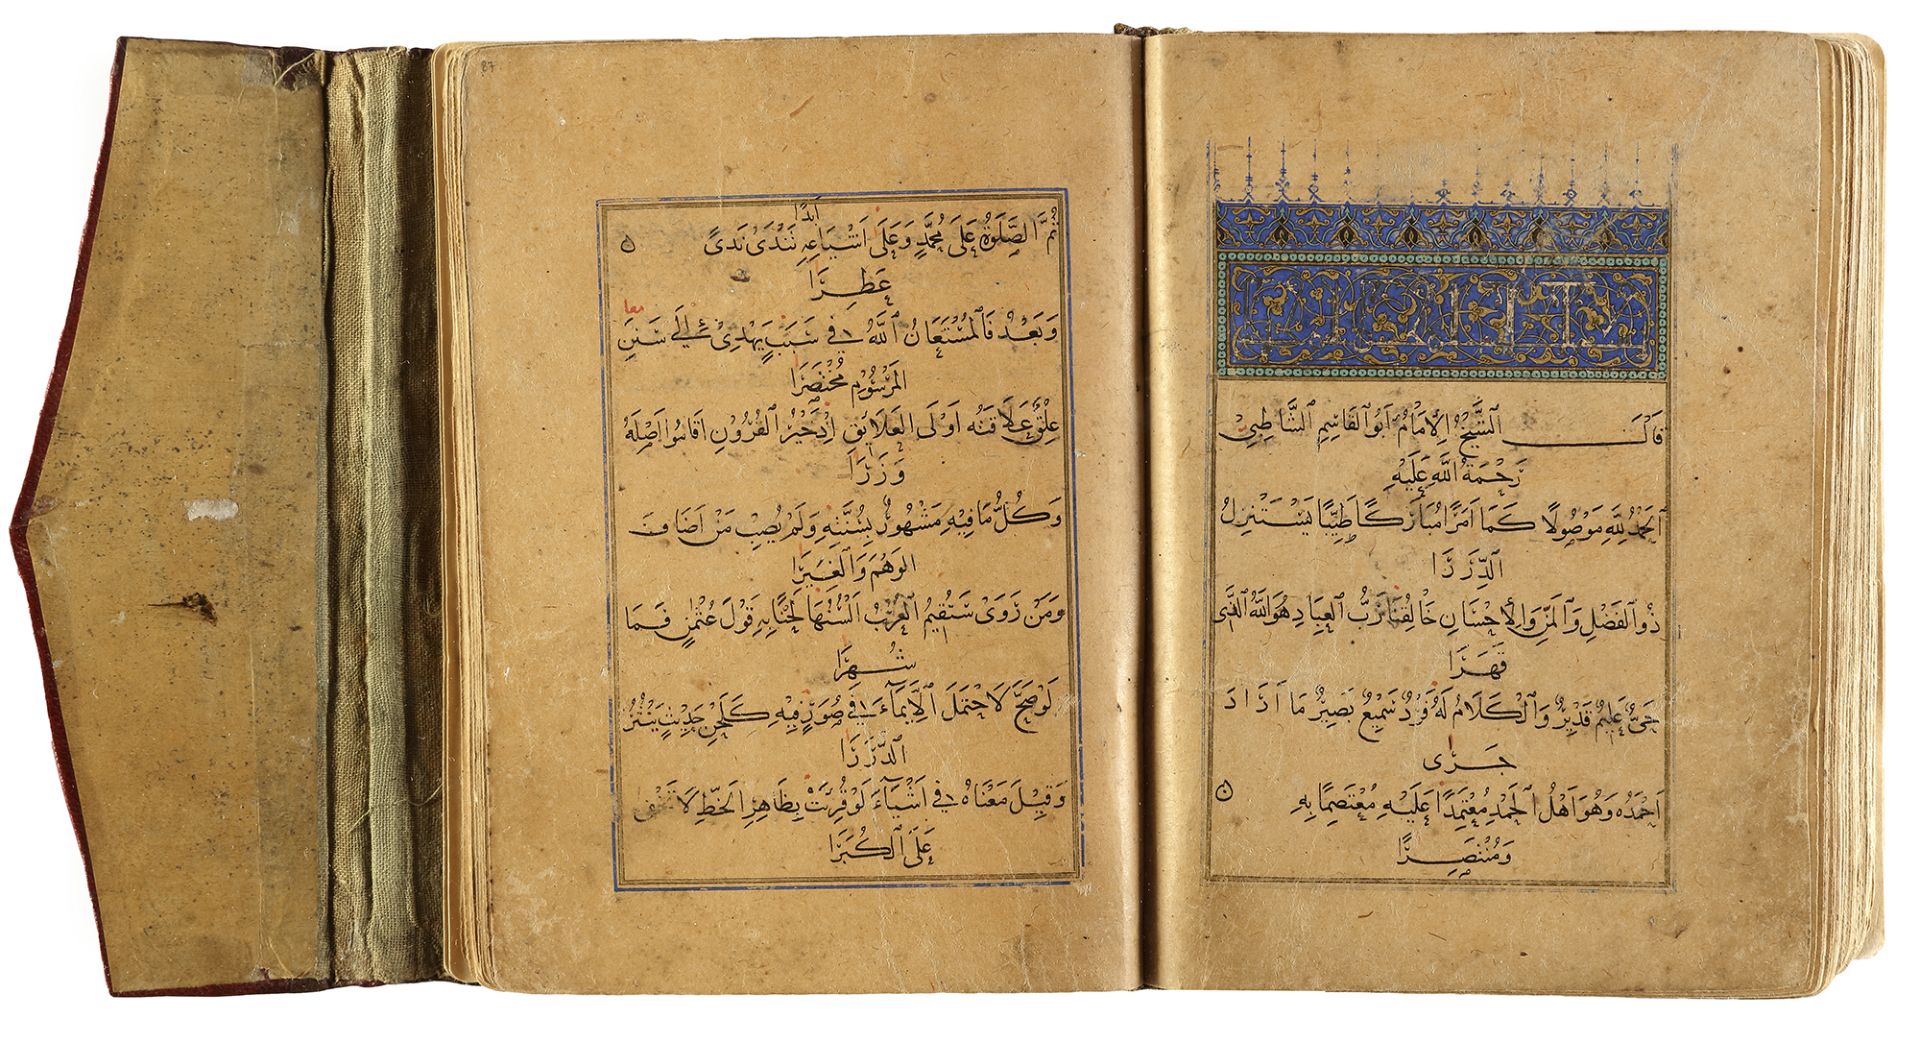 ABU AL-QASIM B. FIROOH AL-RU’AINI AL-SHATIBI (D.1194 AD), HIRZ AL-AMANI WA-WAJH AL-TAHANI, A GUIDE T - Image 4 of 9